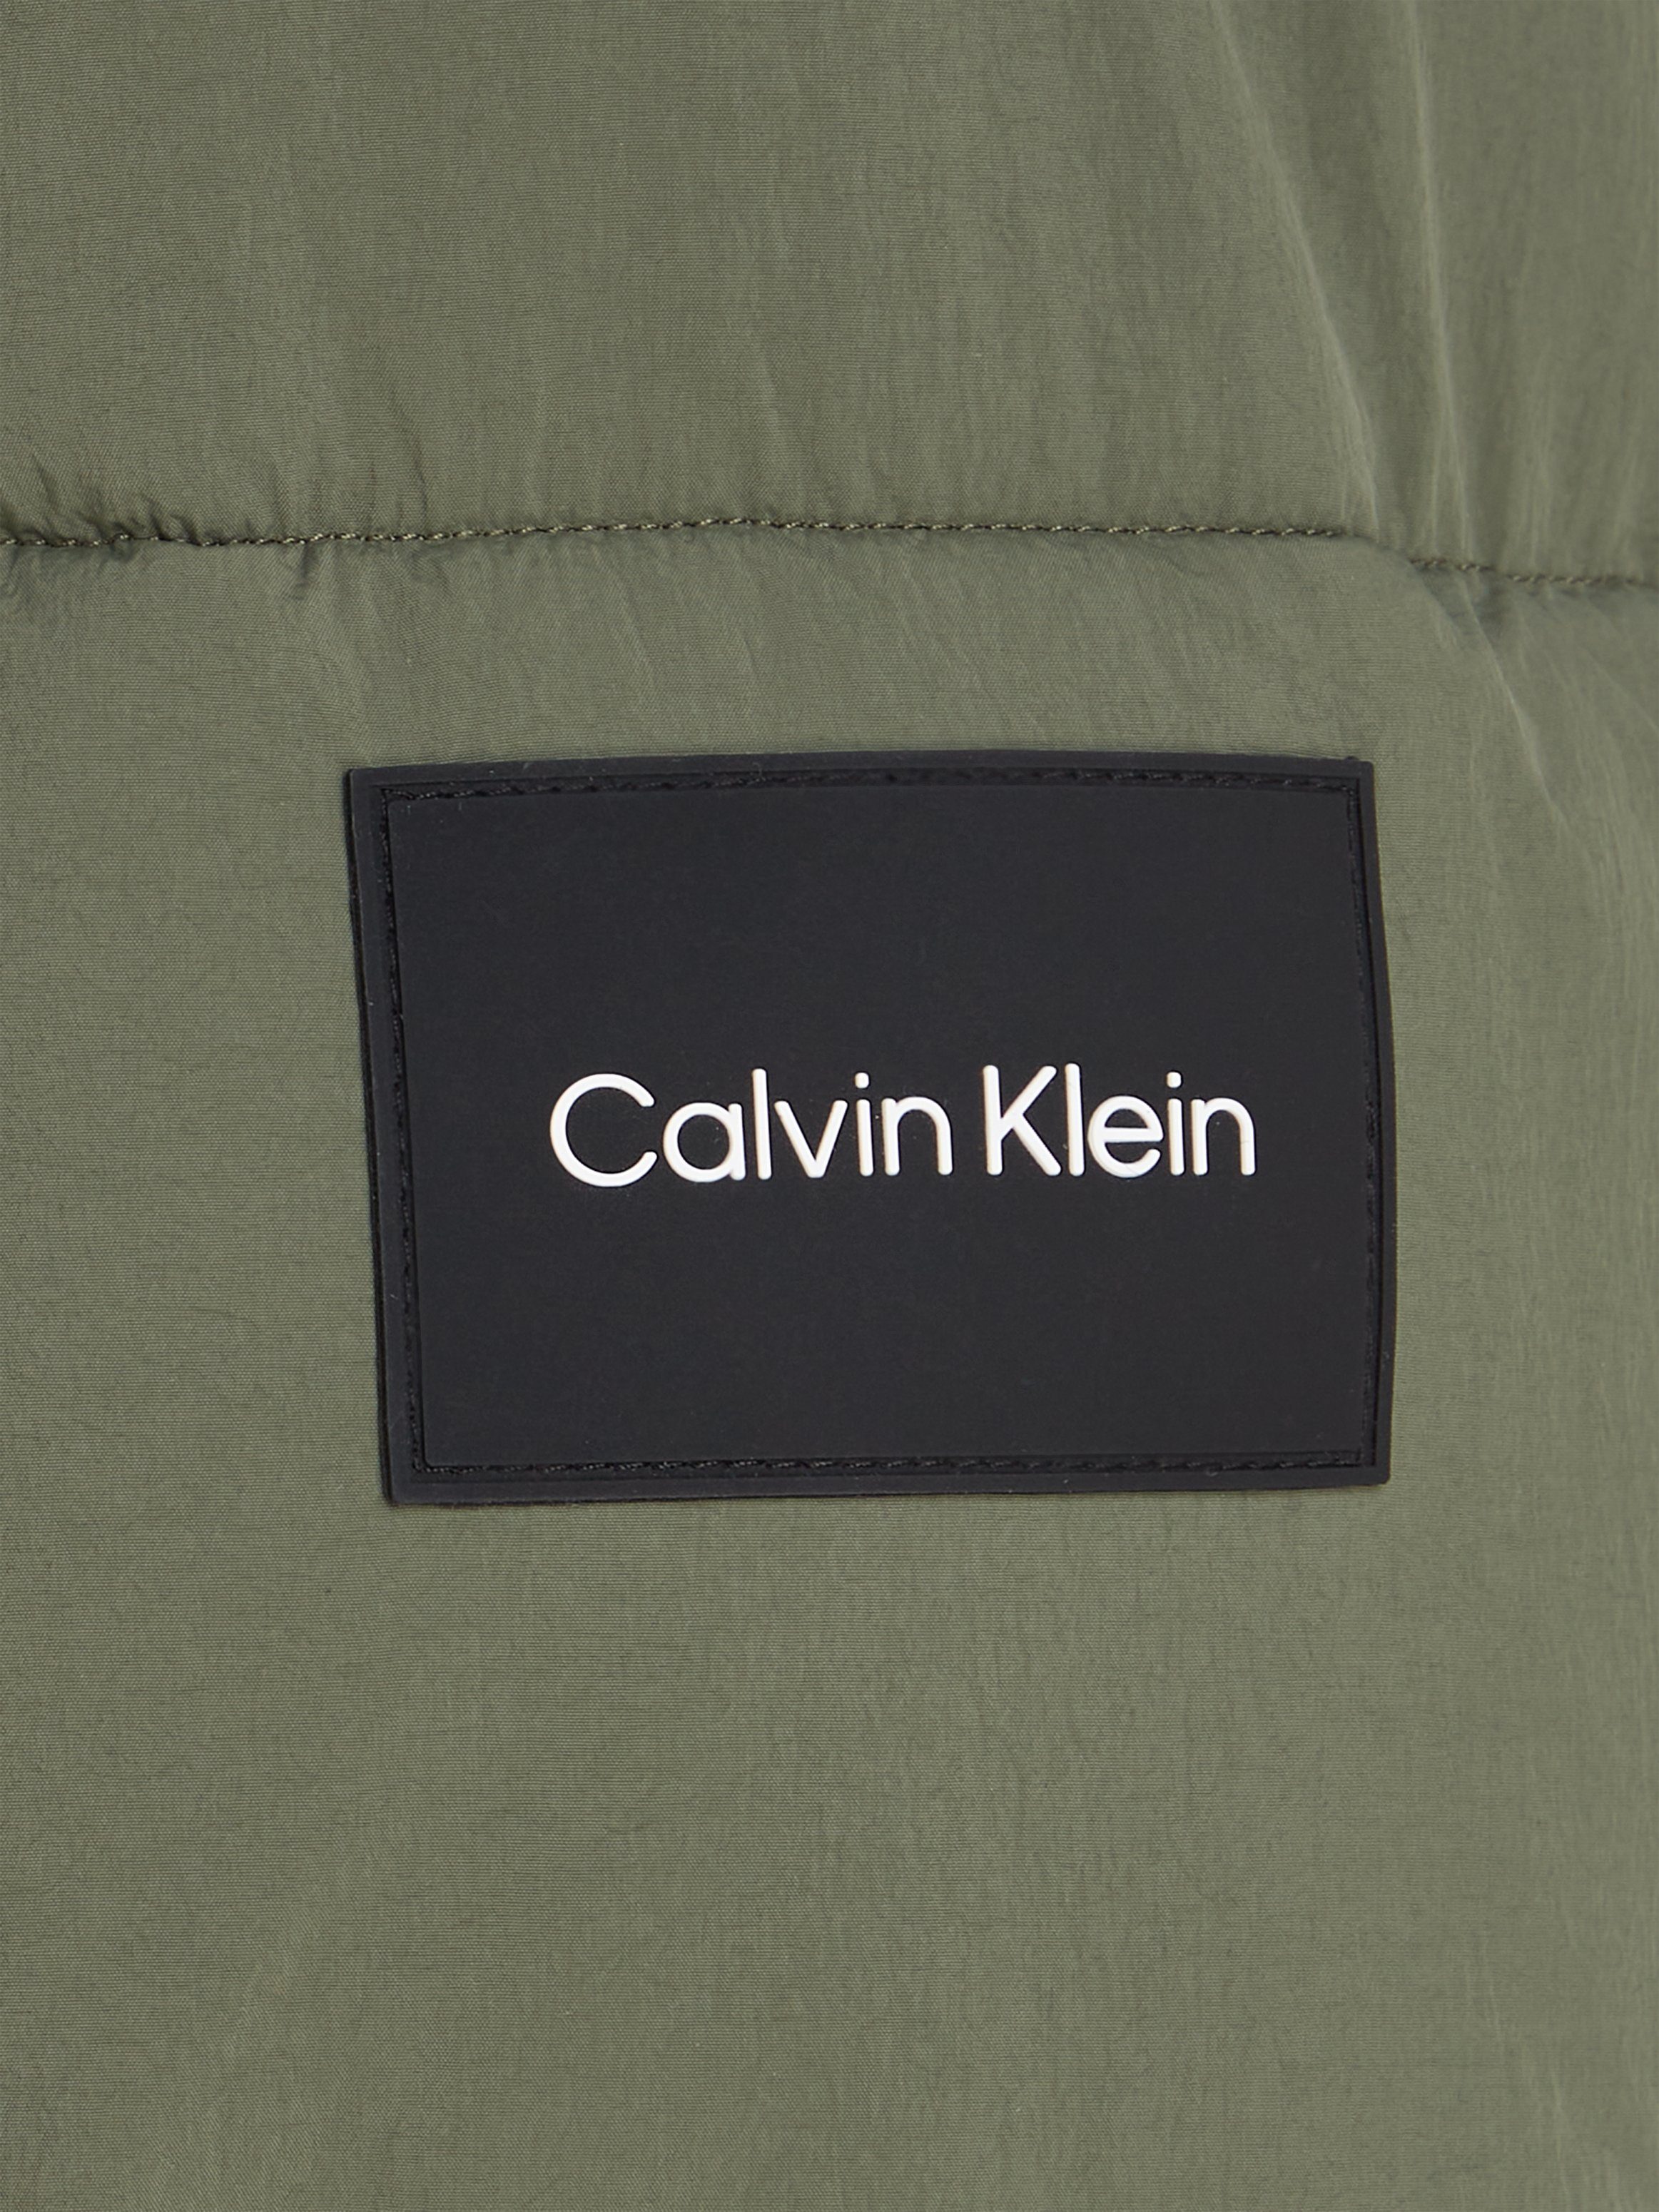 Calvin Klein mit NYLON Thyme PUFFER Markenlabel LONGLENGTH Steppjacke CRINKLE